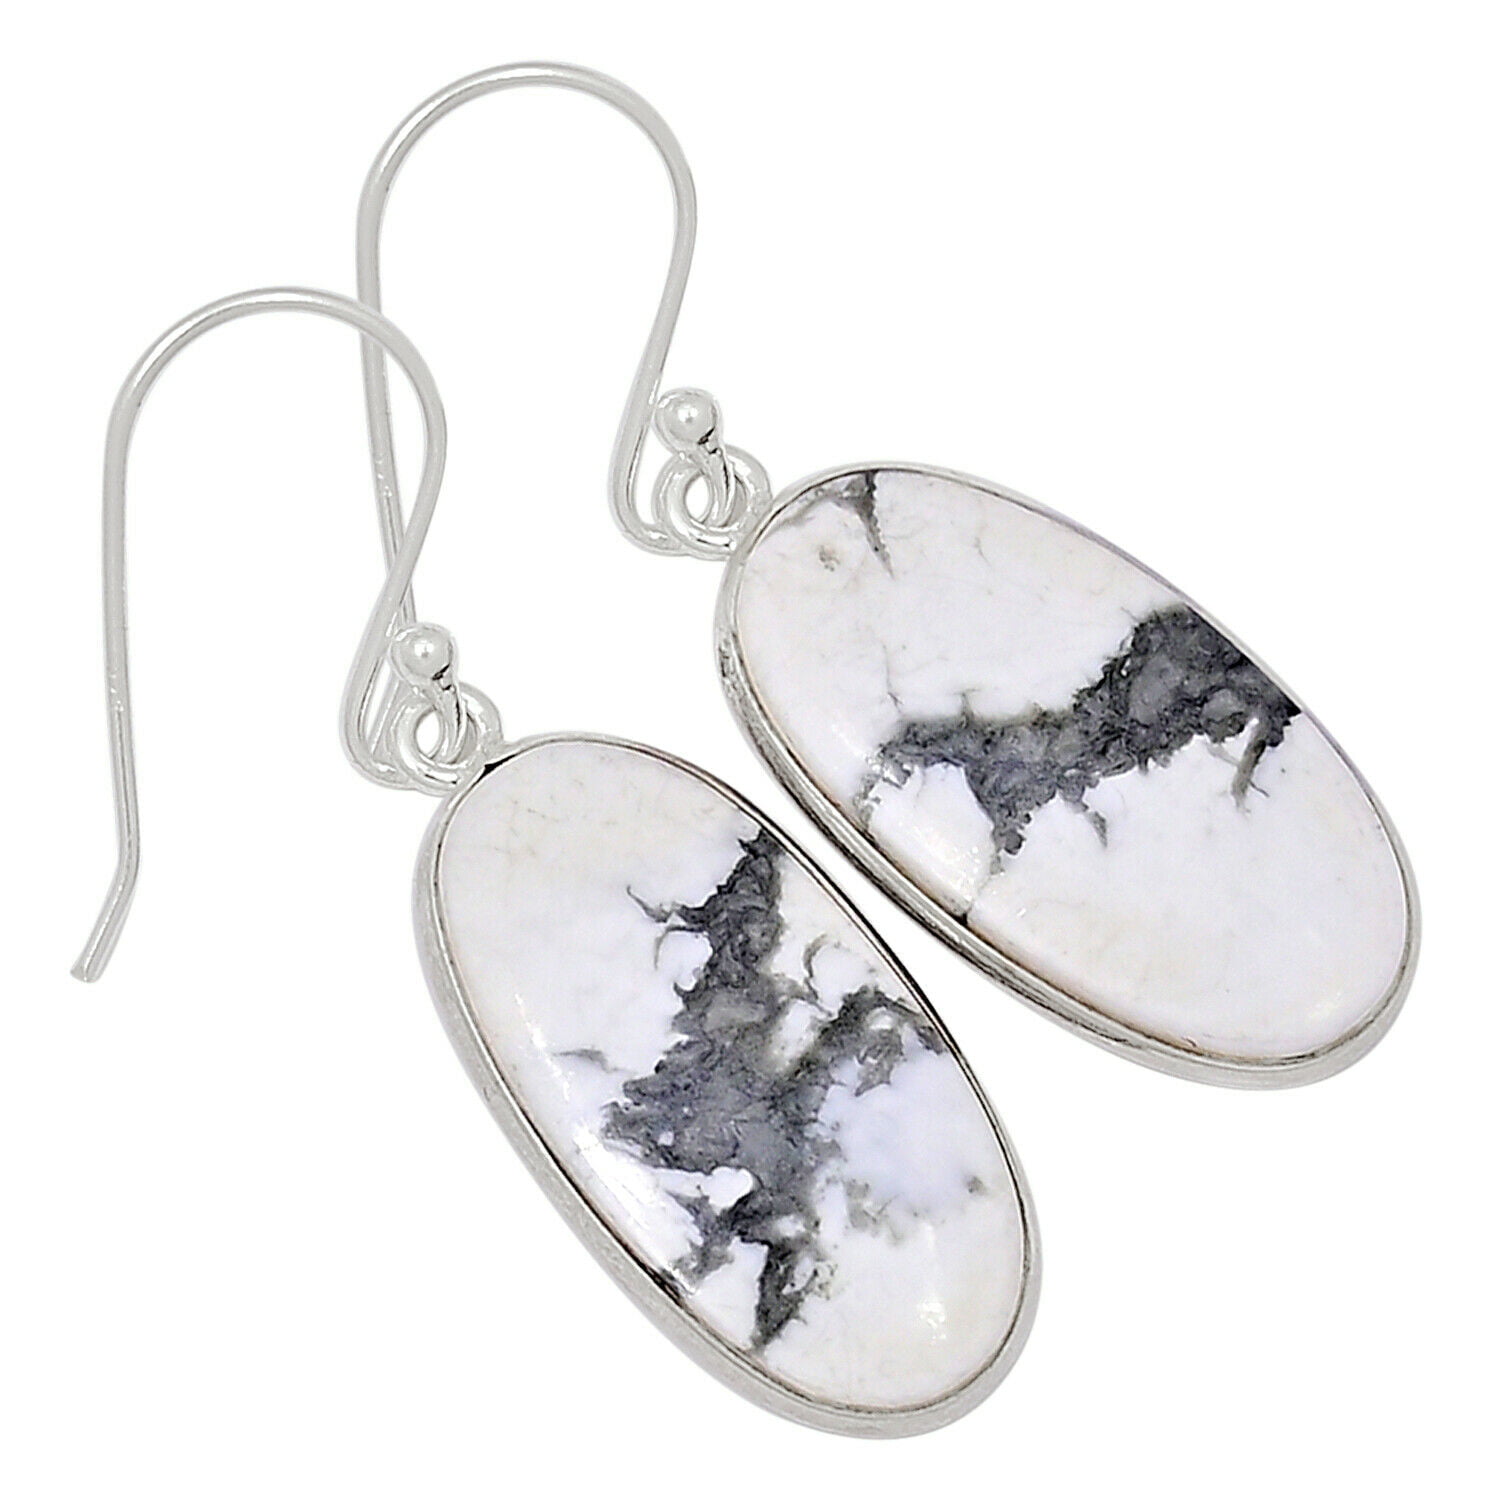 crystal,howlite/sterling silver earring hook "Tree of Life" earrings